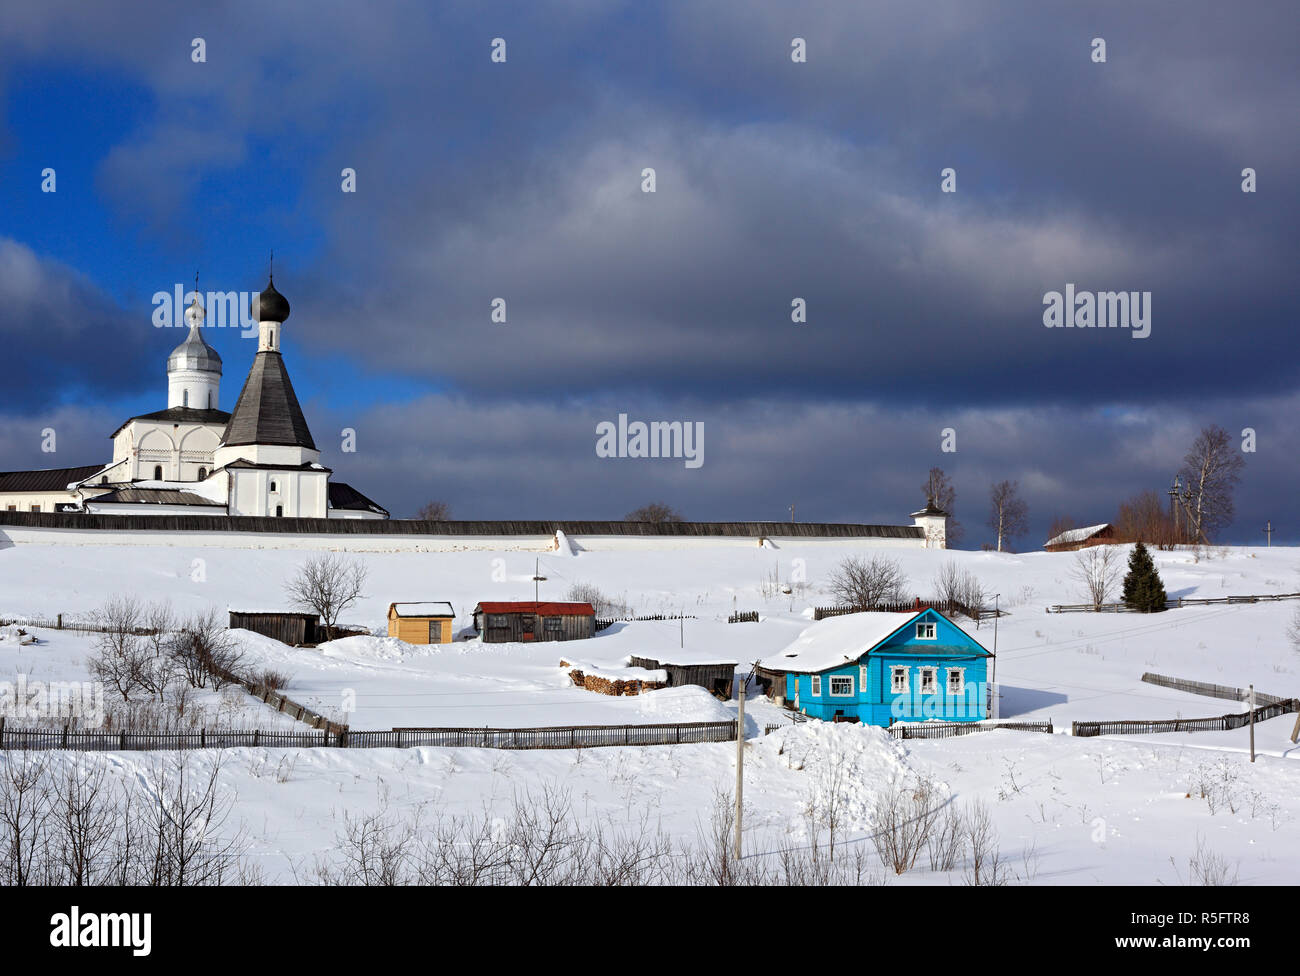 Ferapontov Kloster, Ferapontovo, Region Wologda, Russland Stockfoto